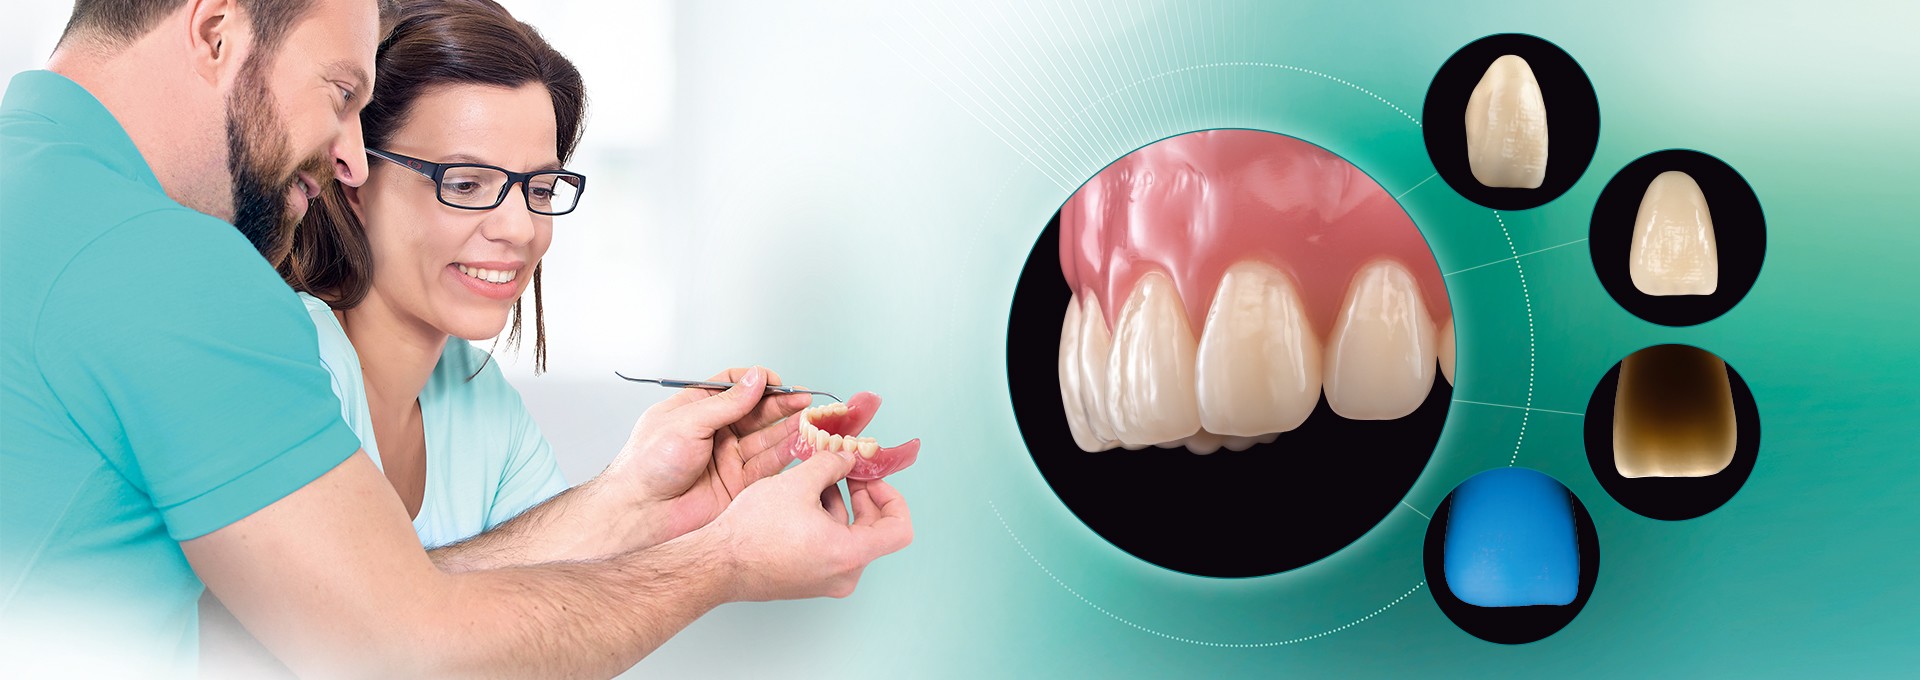 Dos protésicos dentales examinan una prótesis digital. Diversas imágenes del diente protésico VITA VIONIC VIGO.